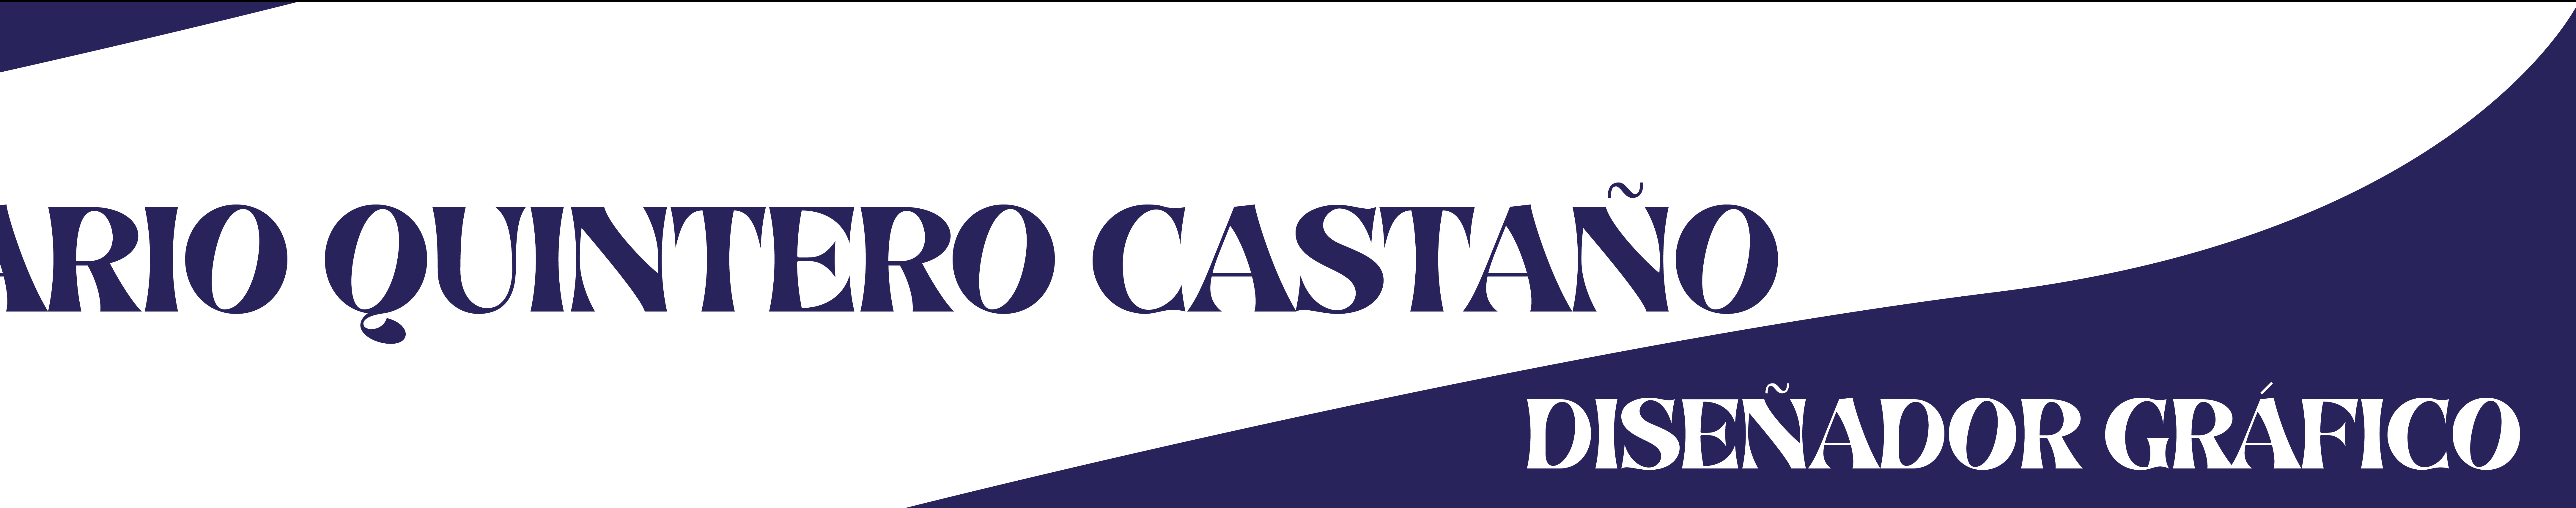 Jhon Quintero Castaño's profile banner